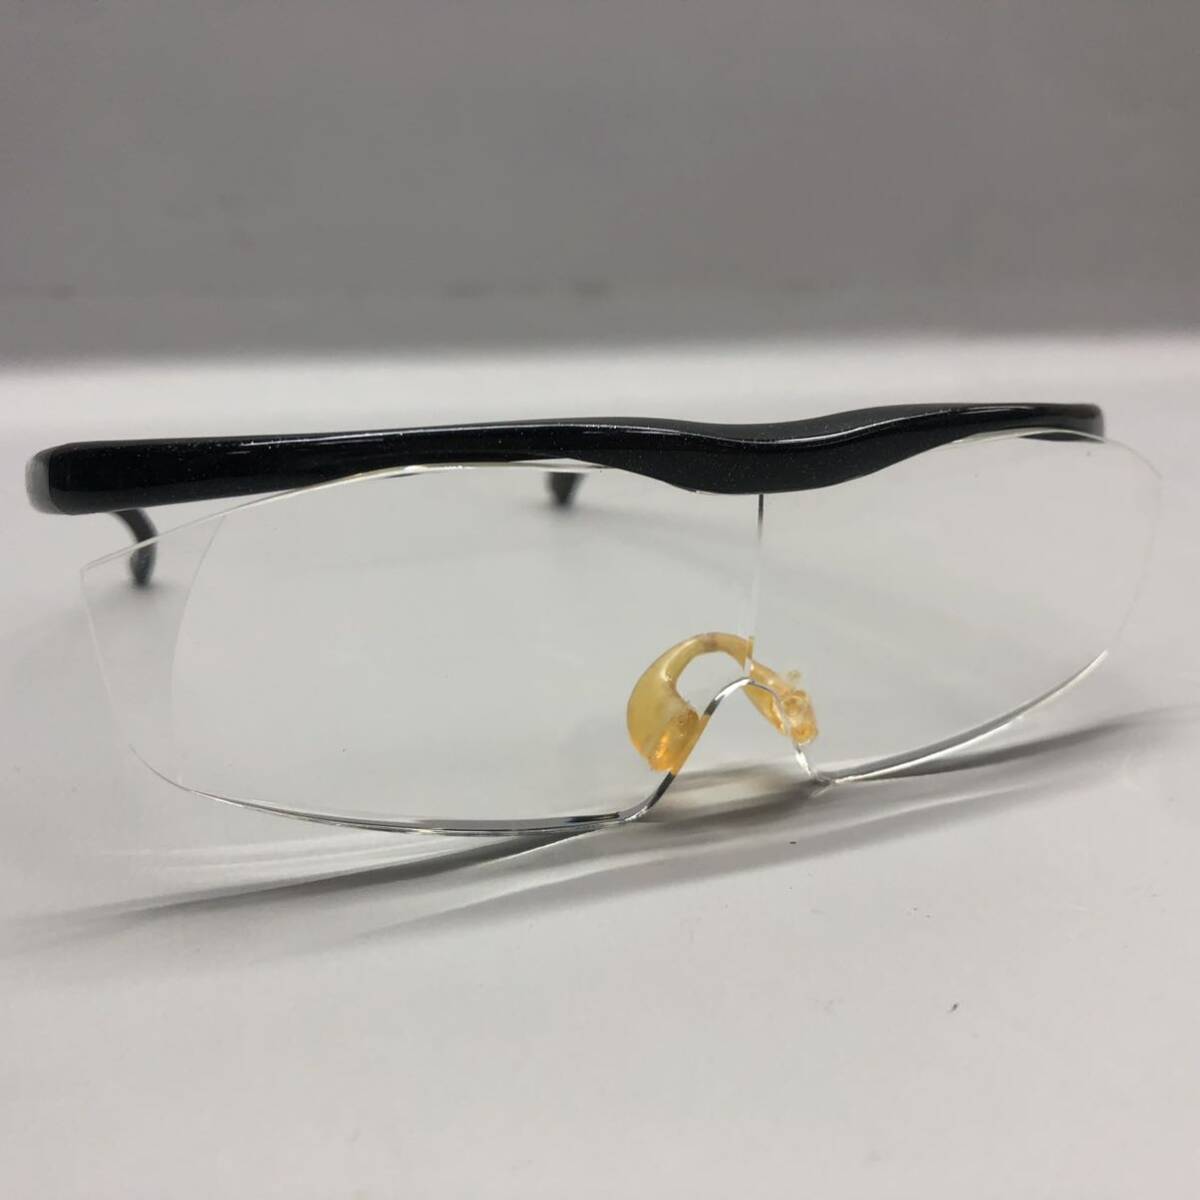 T# Hazuki Huzuki лупа LS 1.6X увеличительное стекло Large размер чёрный ламе бесцветные линзы 1.6 раз корпус только очки при дальнозоркости очки очки для мужчин и женщин б/у товар 